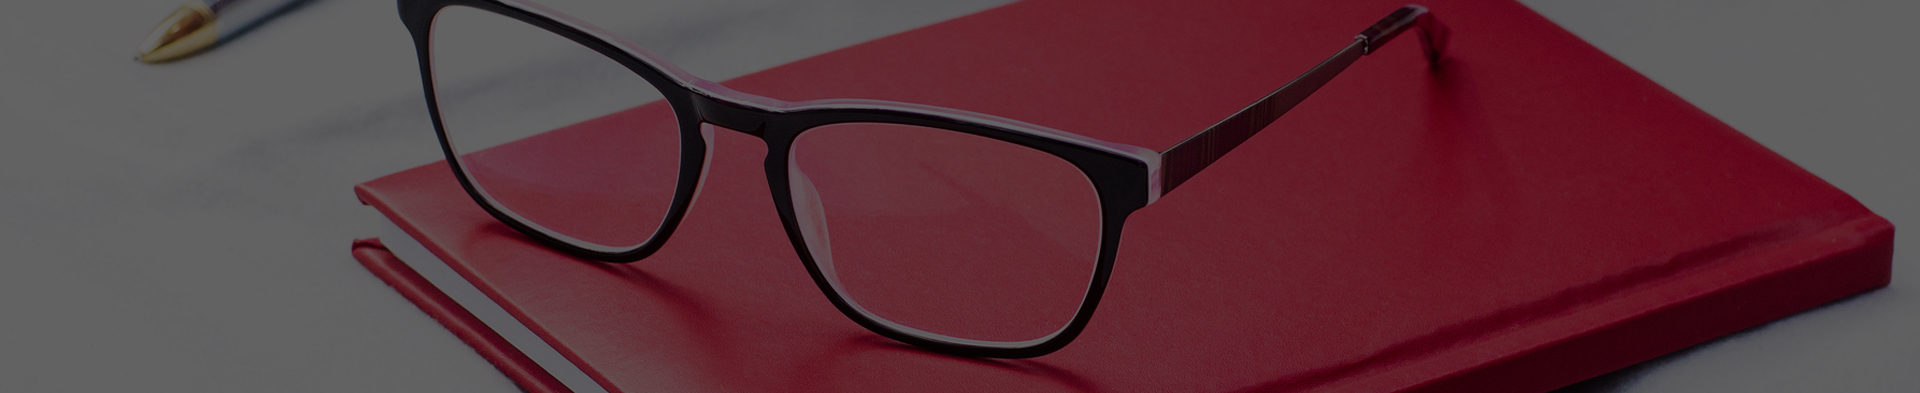 Jak si vybrat ty správné brýlové čočky